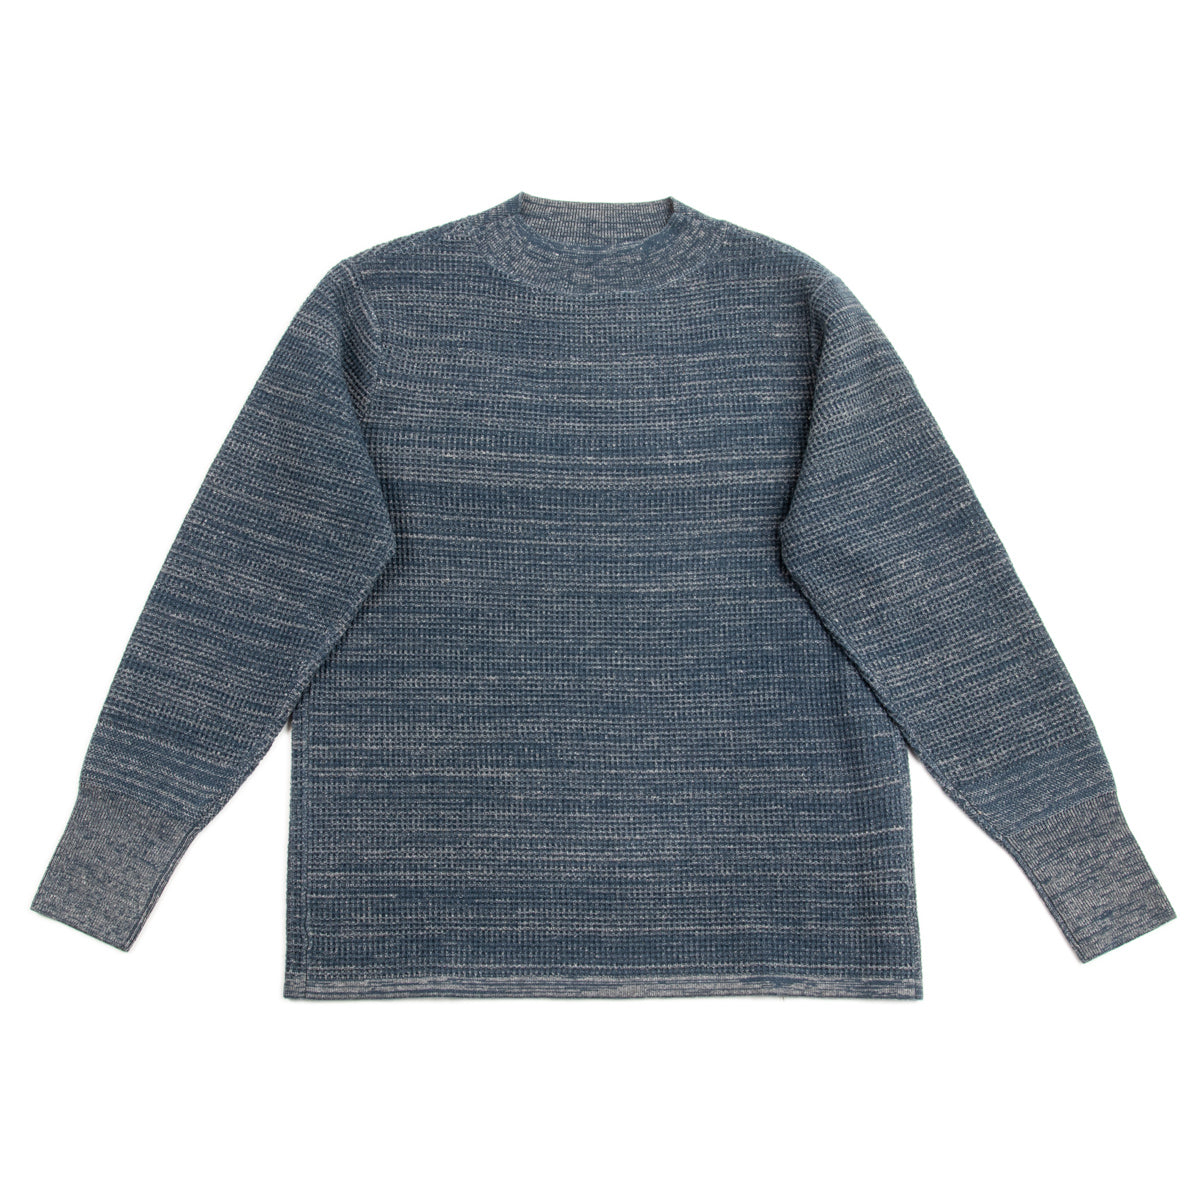 MotivMfg Micro Waffle Thermal Knit - Smokey Blue Wool Linen Cotton –  Standard & Strange